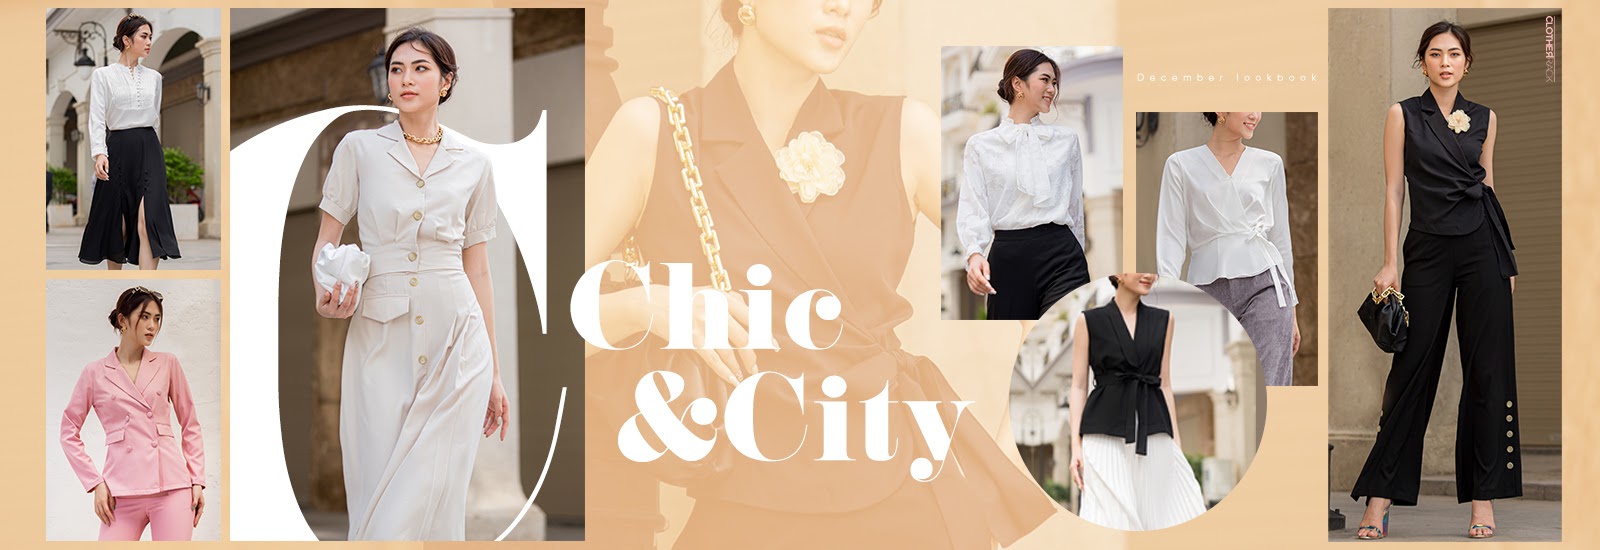 Clothesrack - Thời trang THE CHIC & CITY